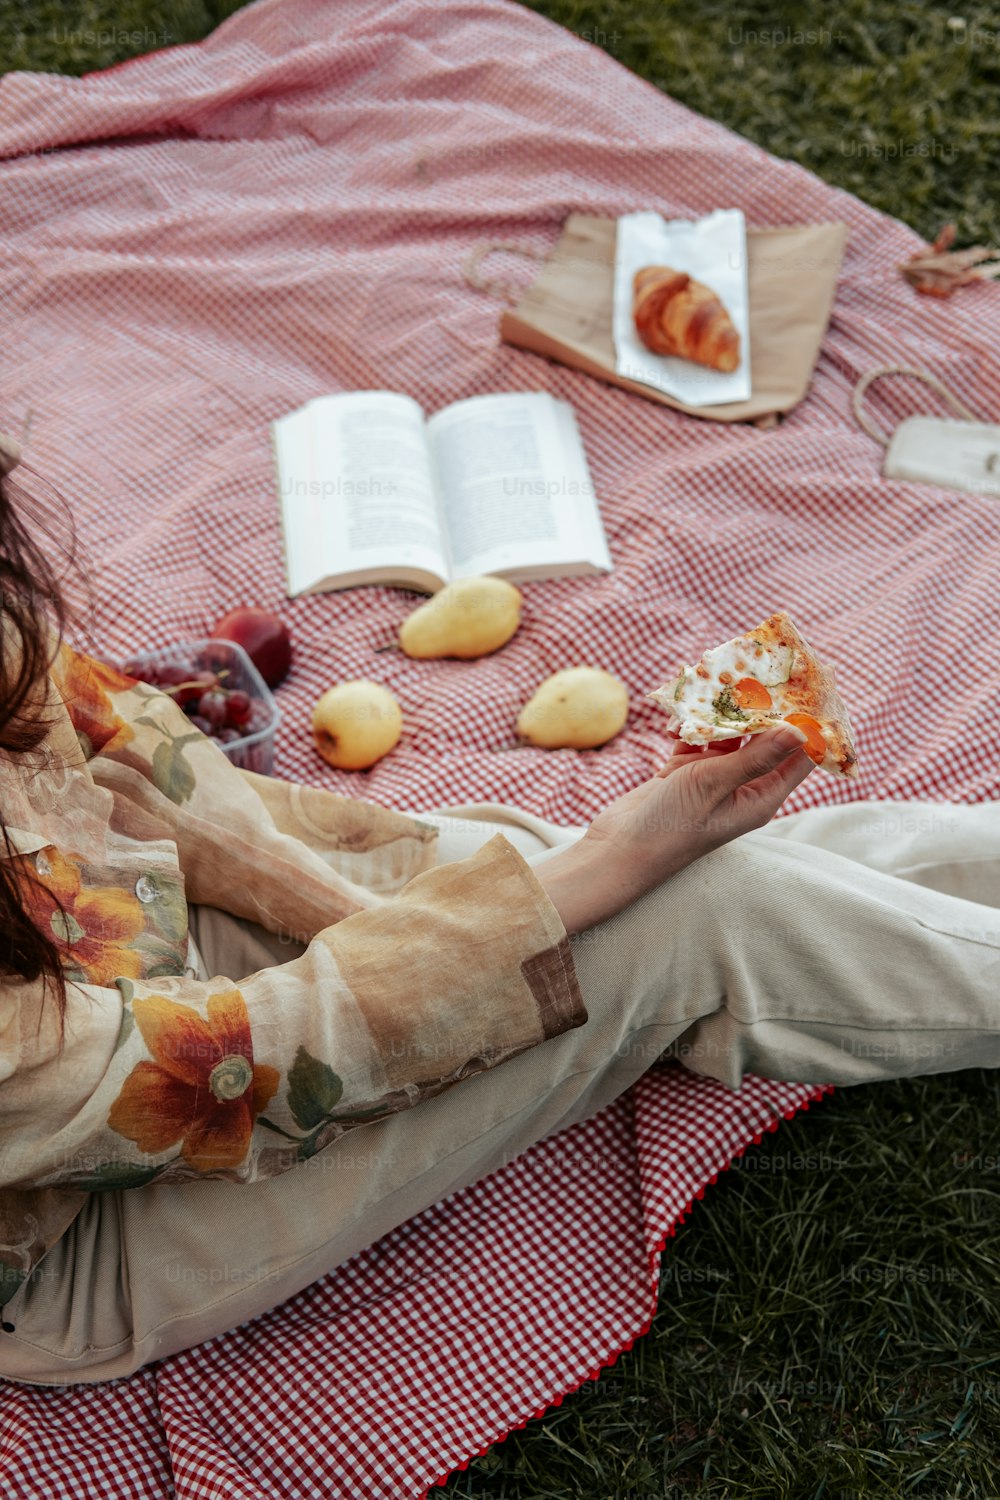 uma mulher sentada em um cobertor comendo comida